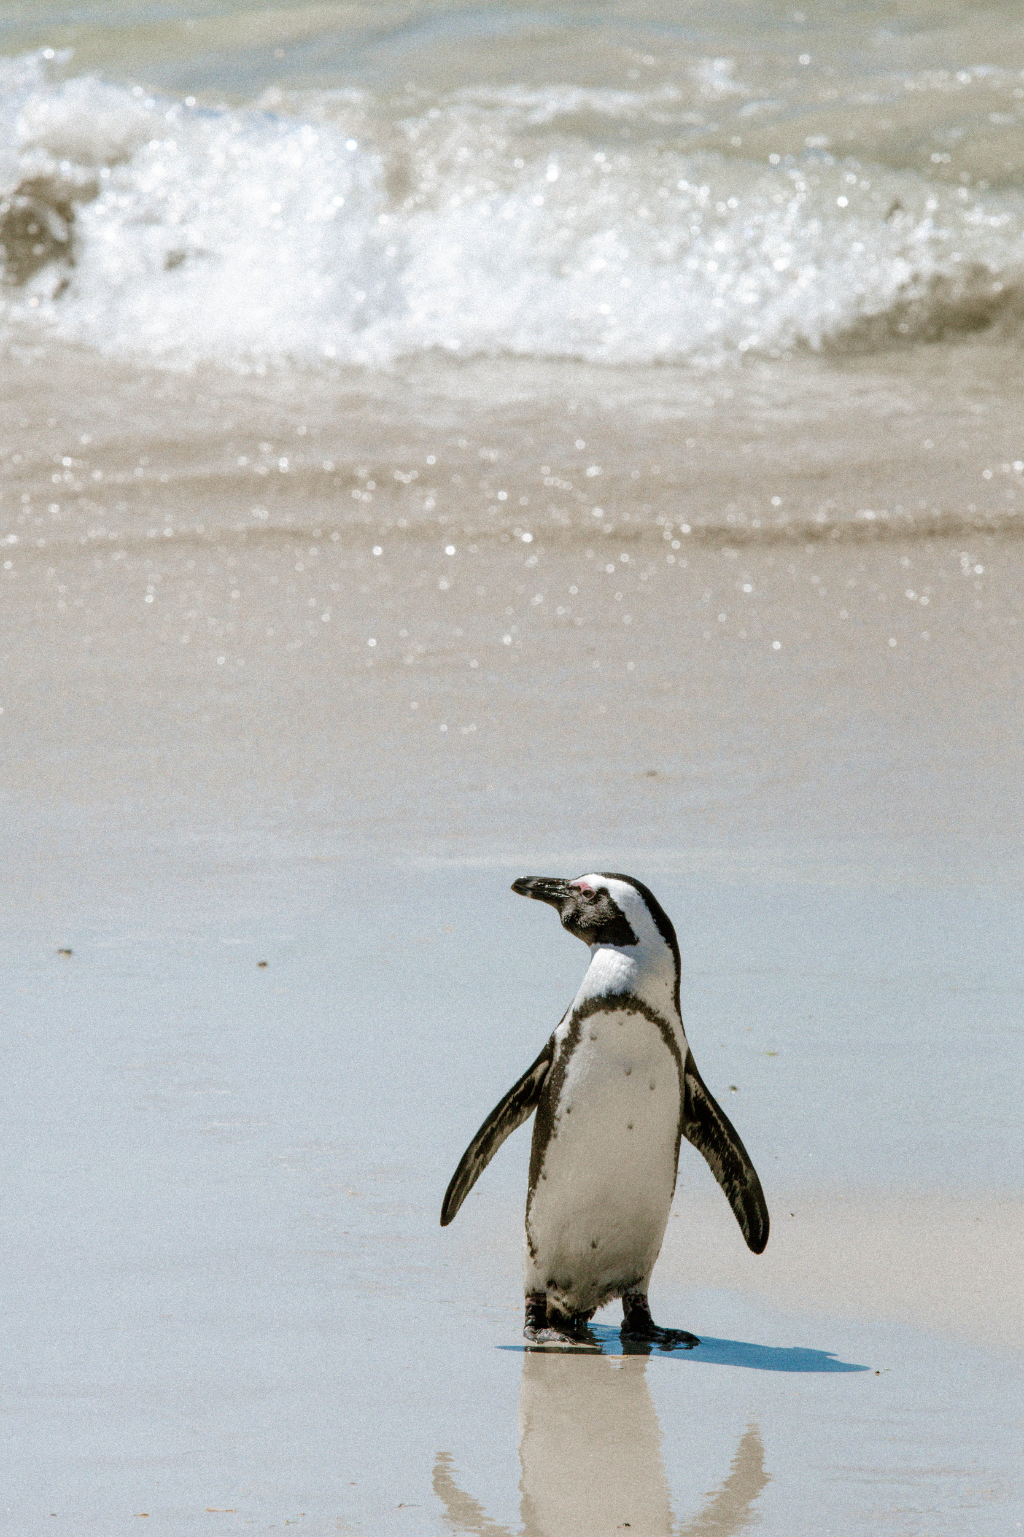 Südafrika : Hier haben die Pinguine den Strand übernommen - Bilder